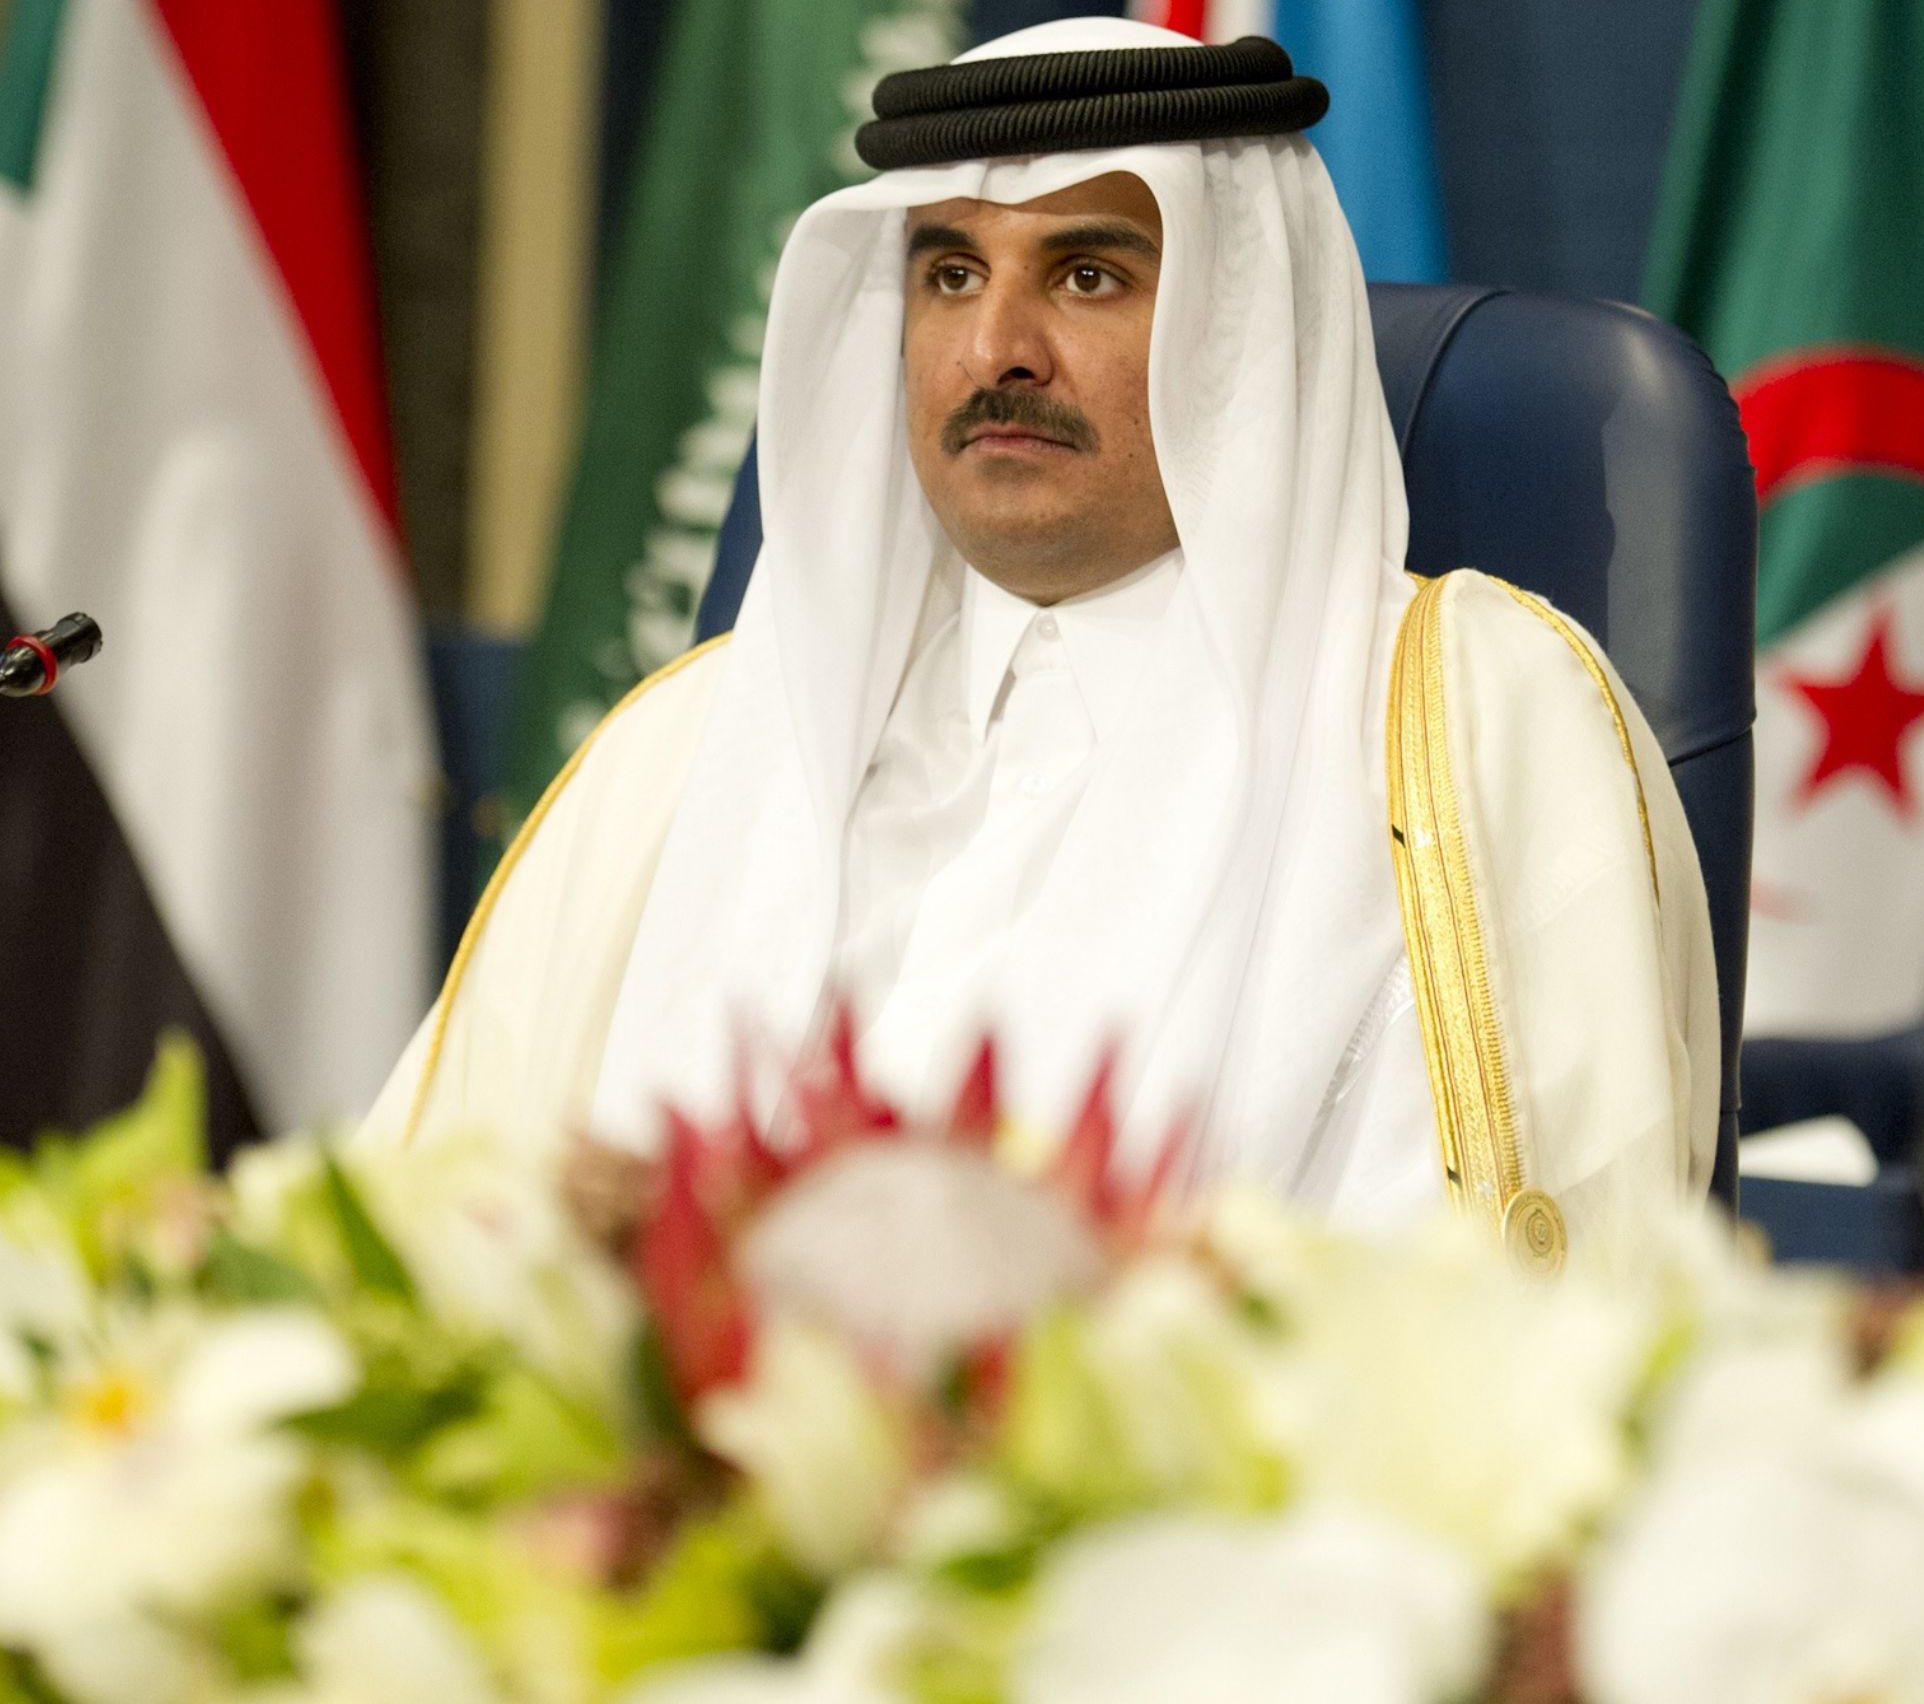 أمير قطر يعيد تشكيل مجلس الوزراء بتغيير وزيري الخارجية والدفاع